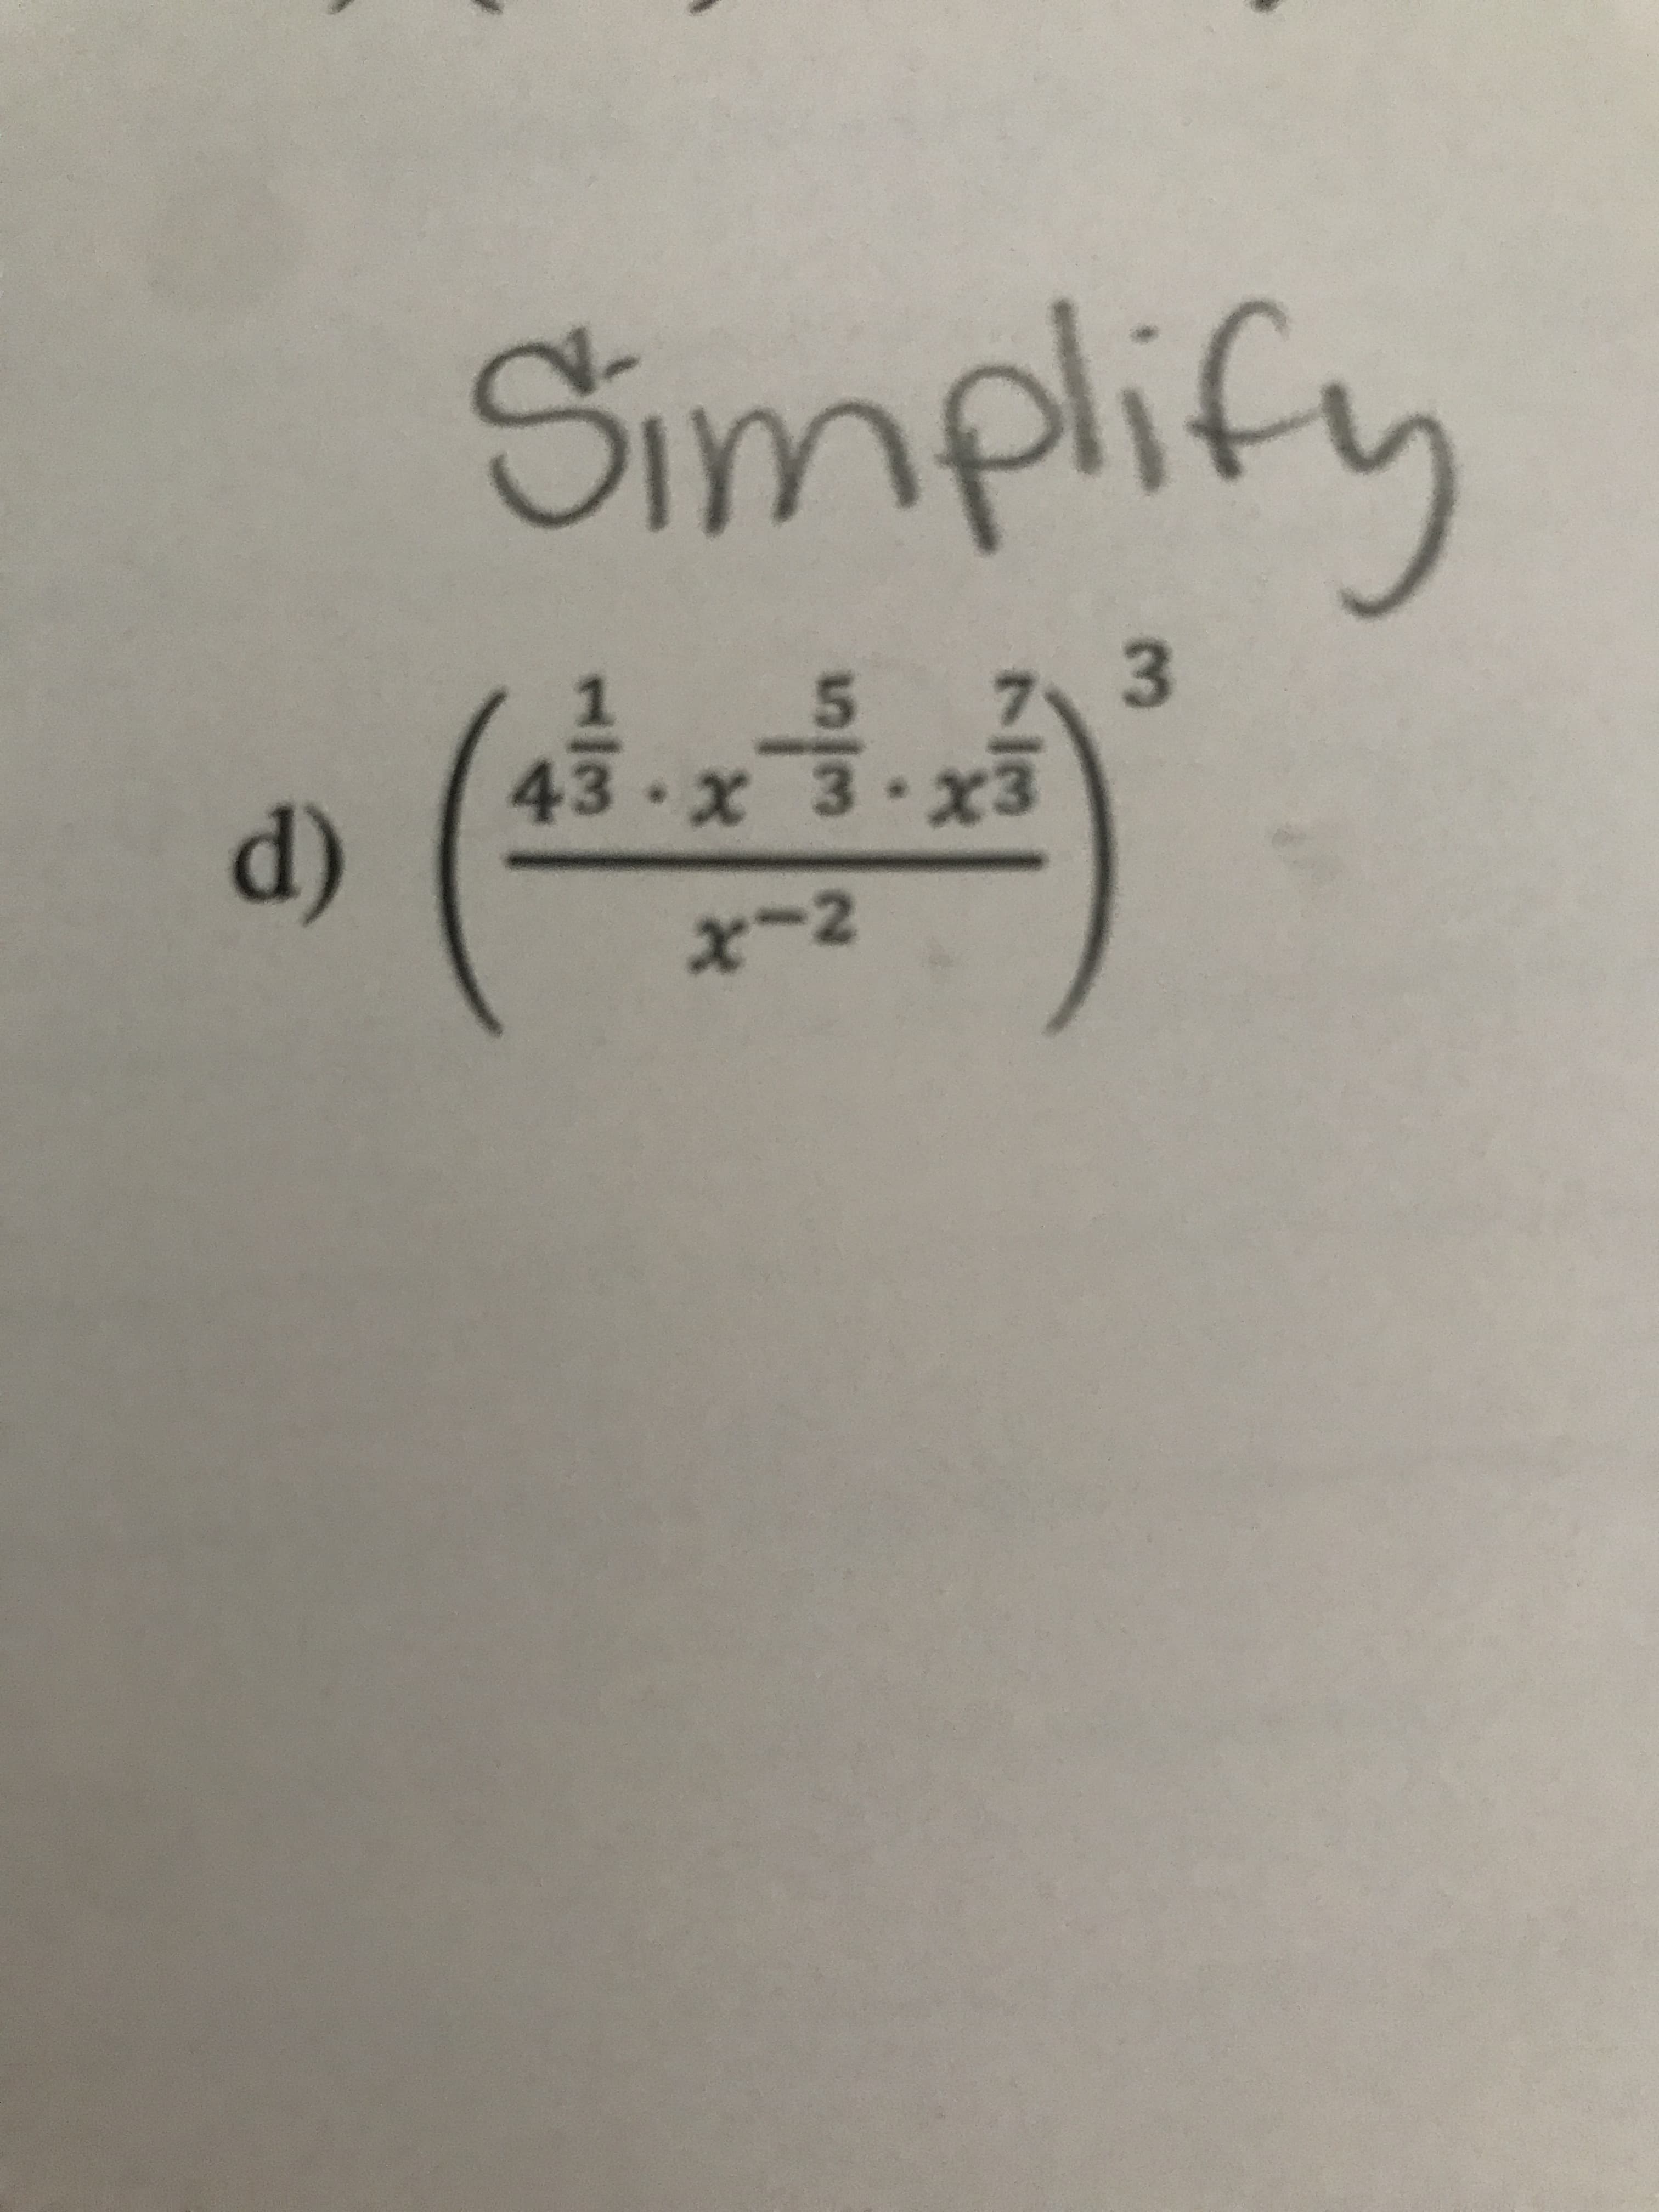 Simplify
3.
43.x3.2x3
(p
x-2
